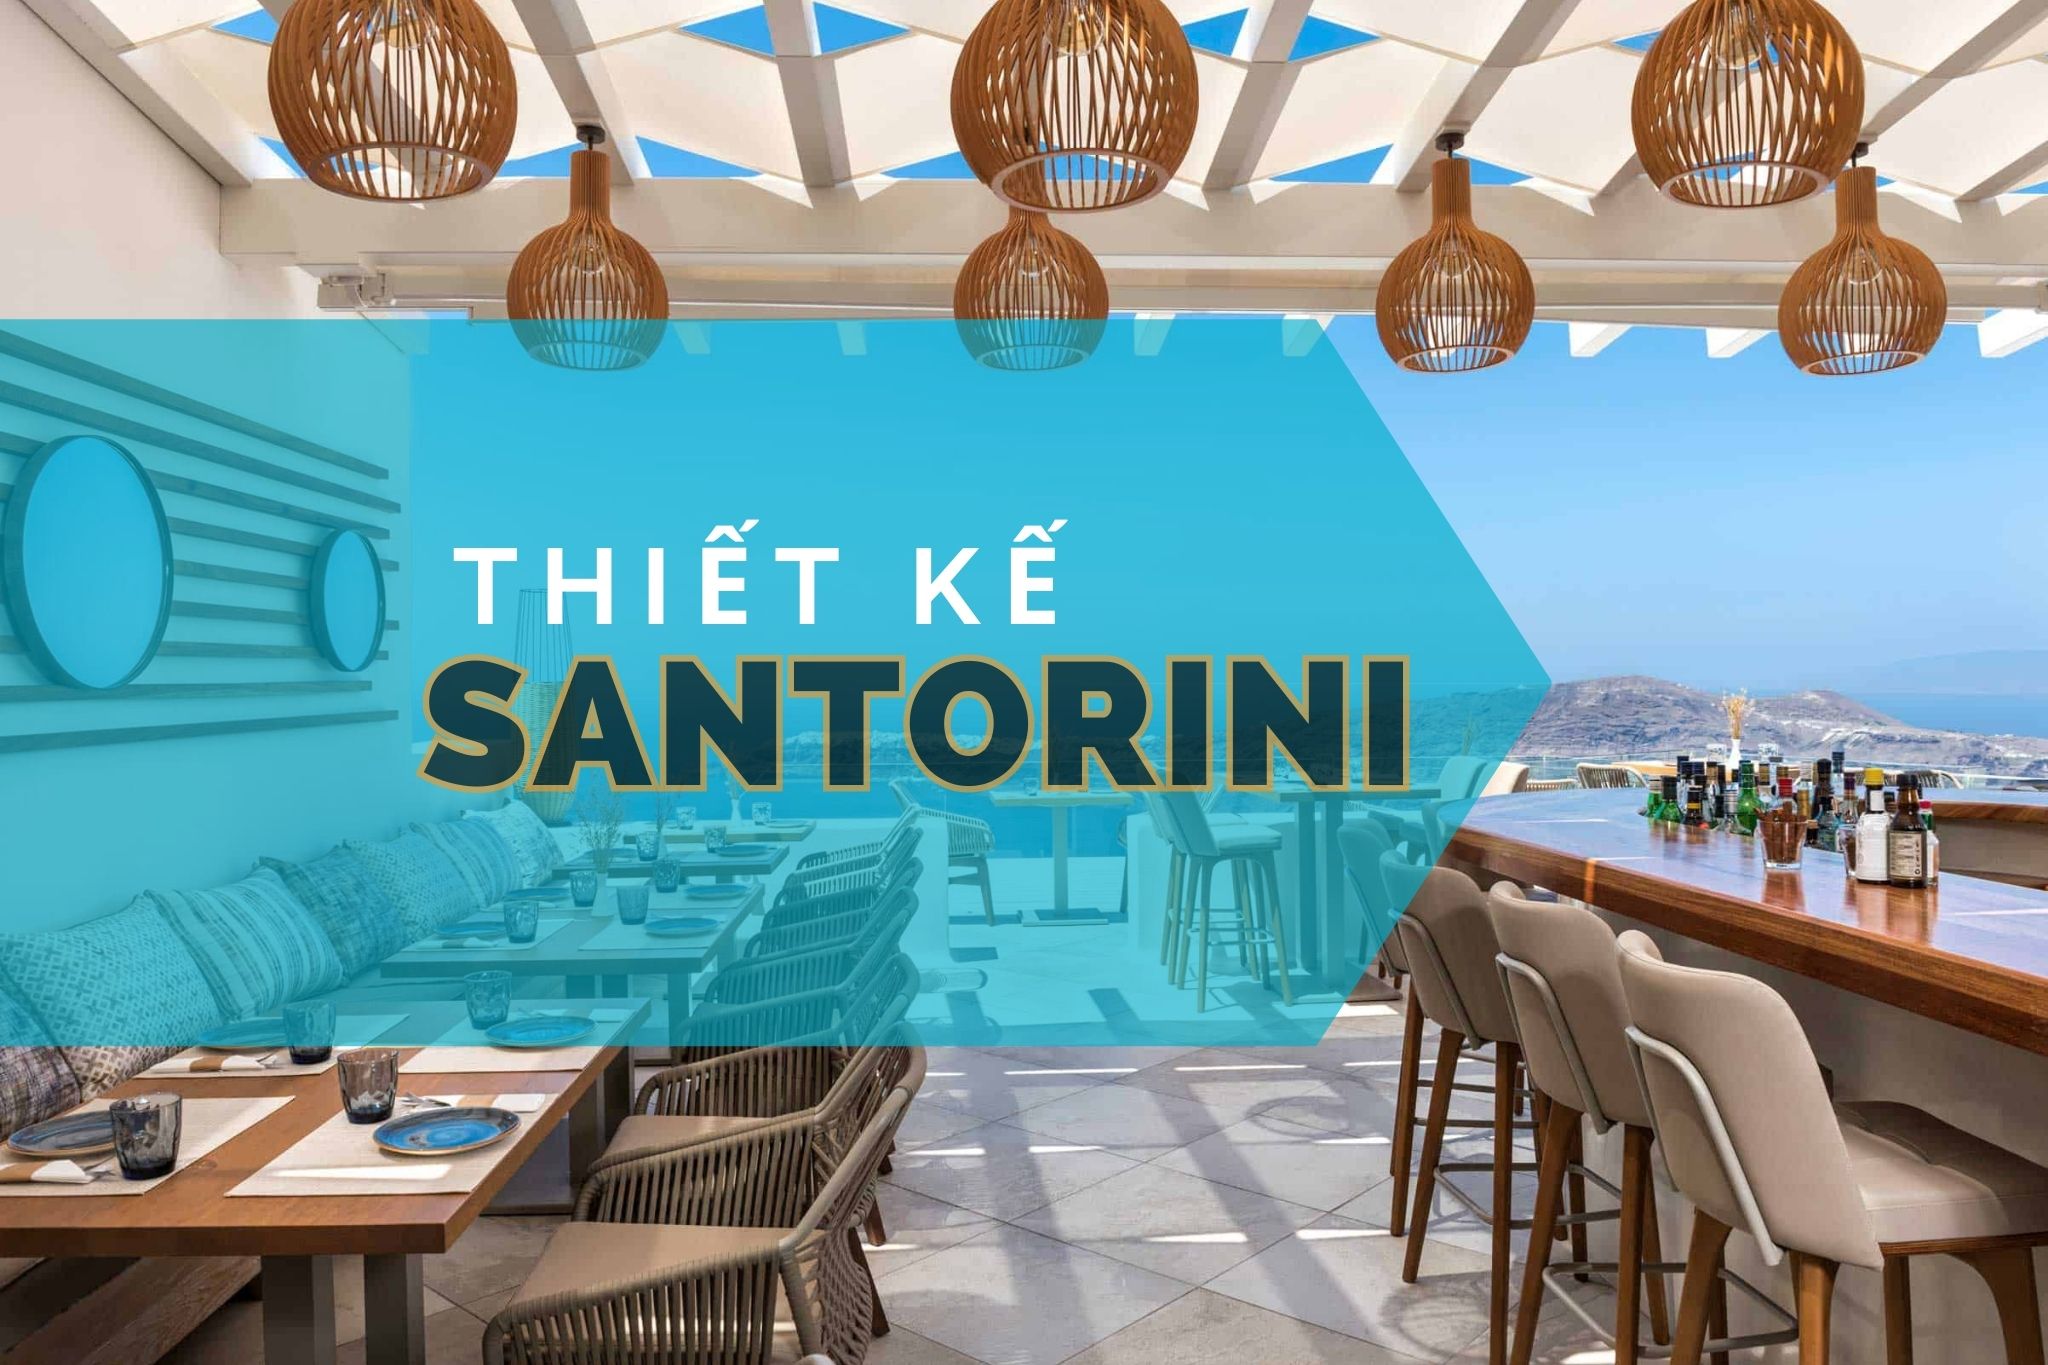 Thiết kế Santorini - Thiên đường sang chảnh đậm chất Địa Trung Hải